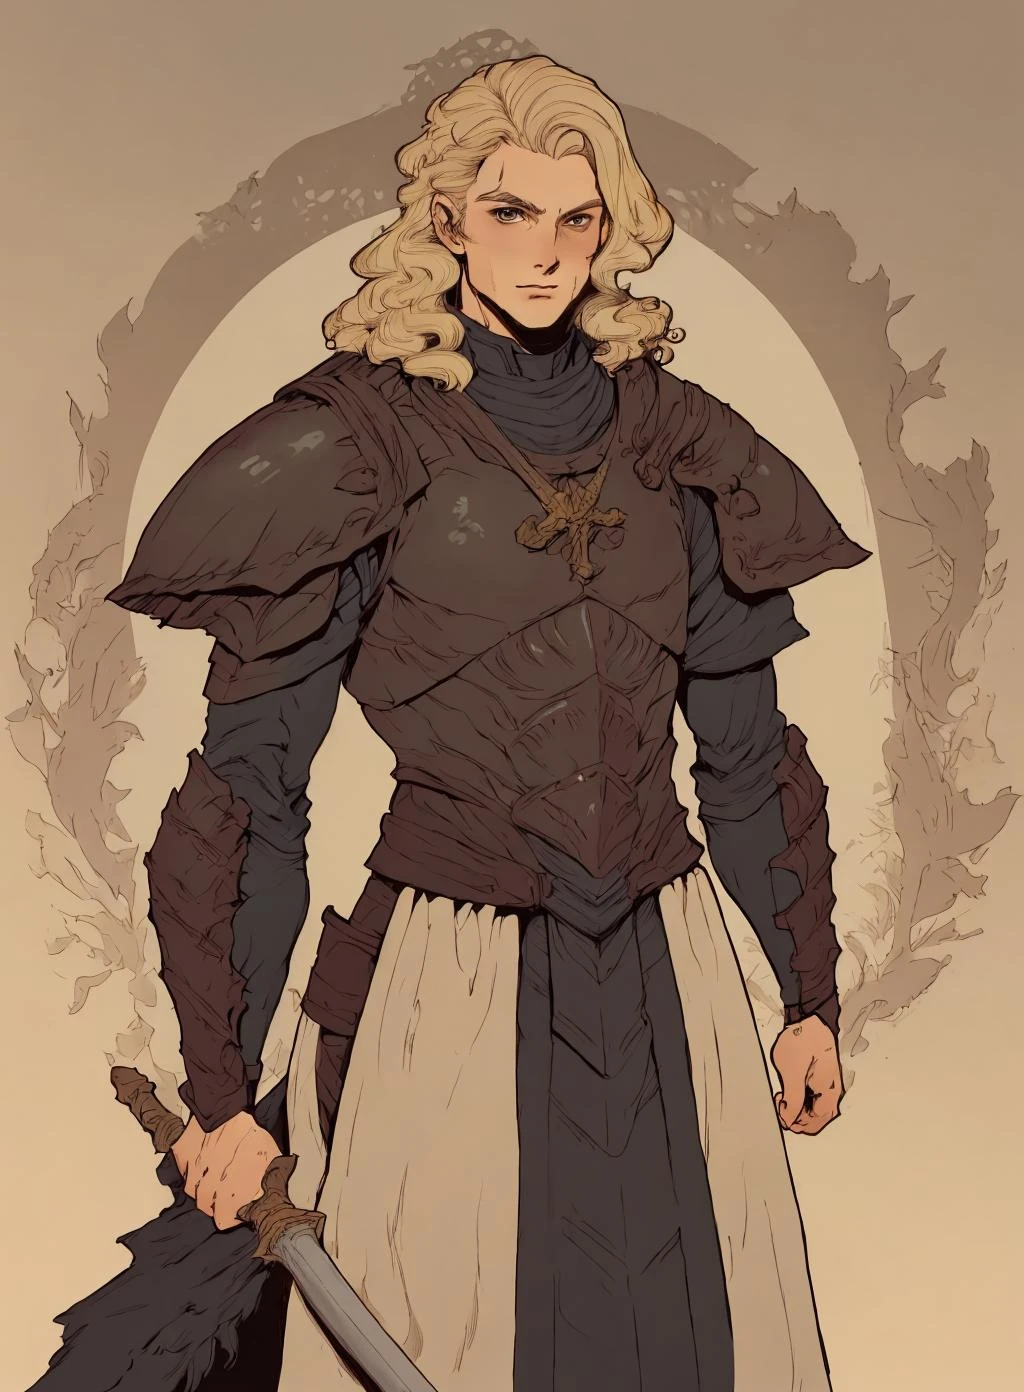 desenho de um homem,
cabelo loiro,   armaduras, guerreiro medieval,  Sozinho,
